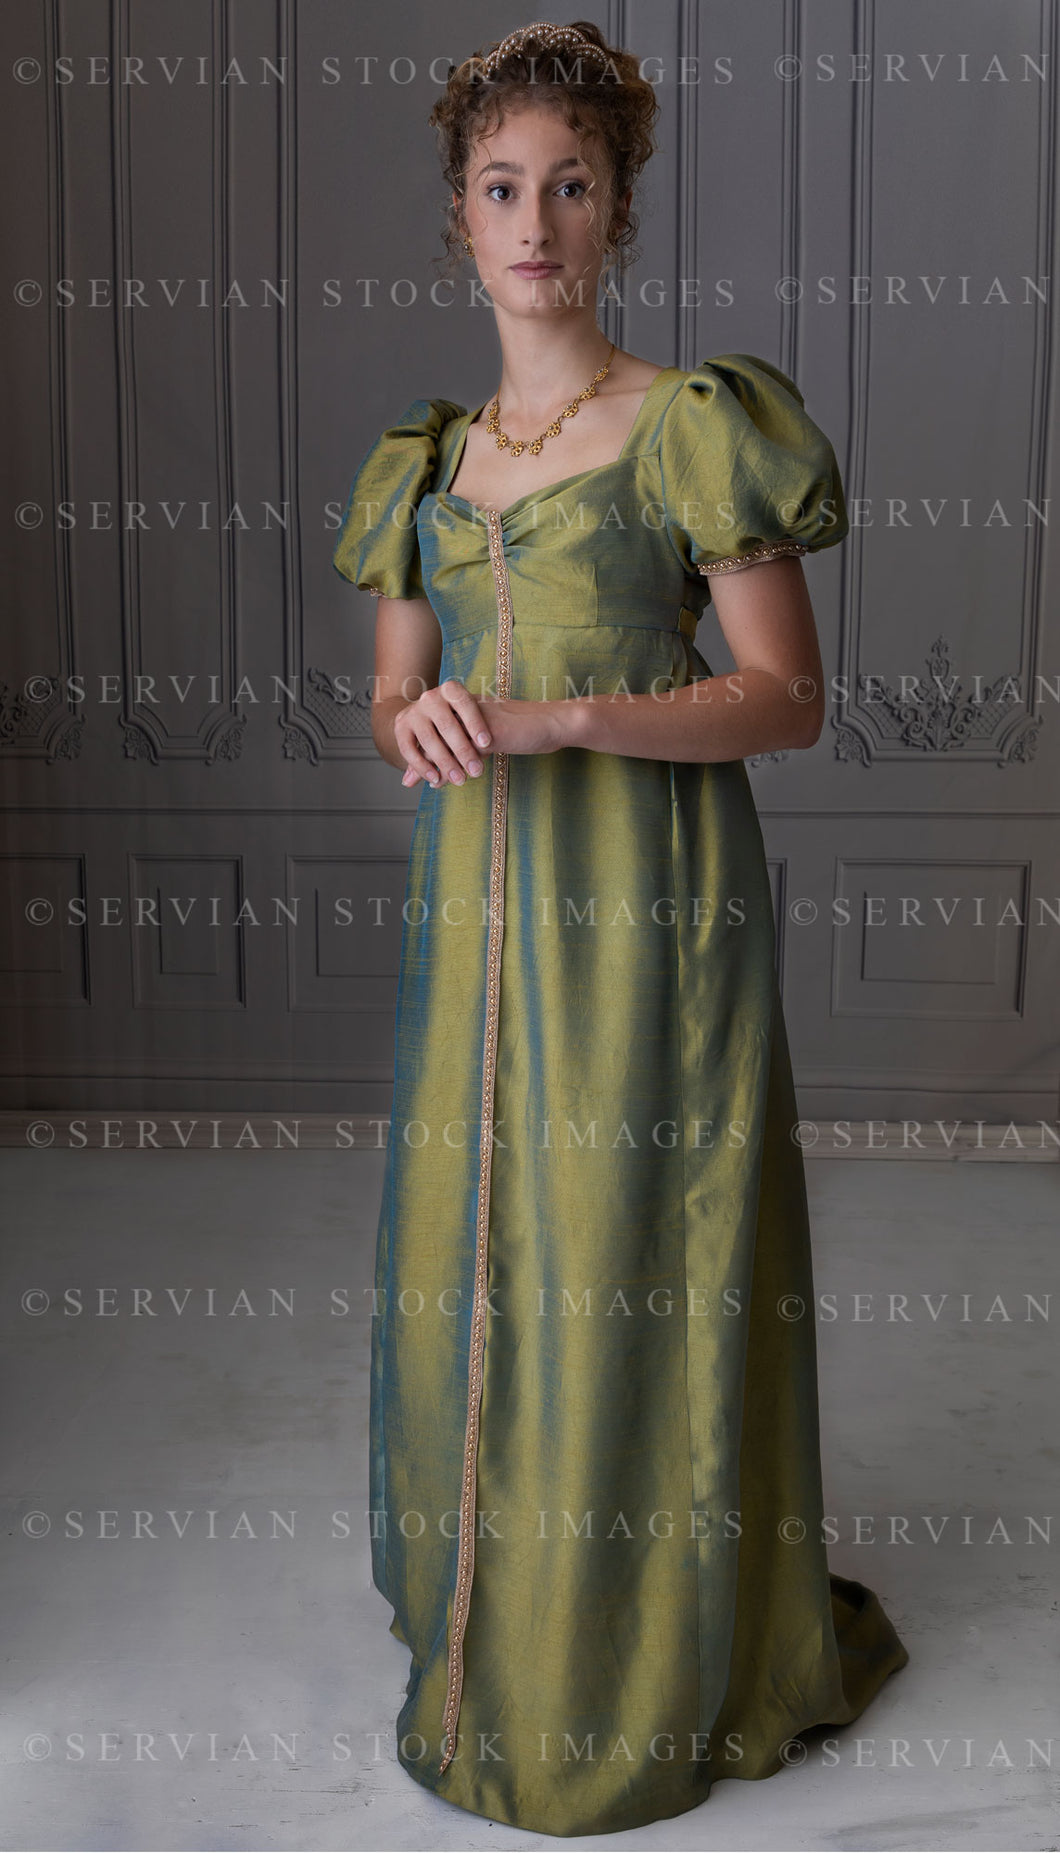 Regency woman in a shot silk gown (Sav 8473)